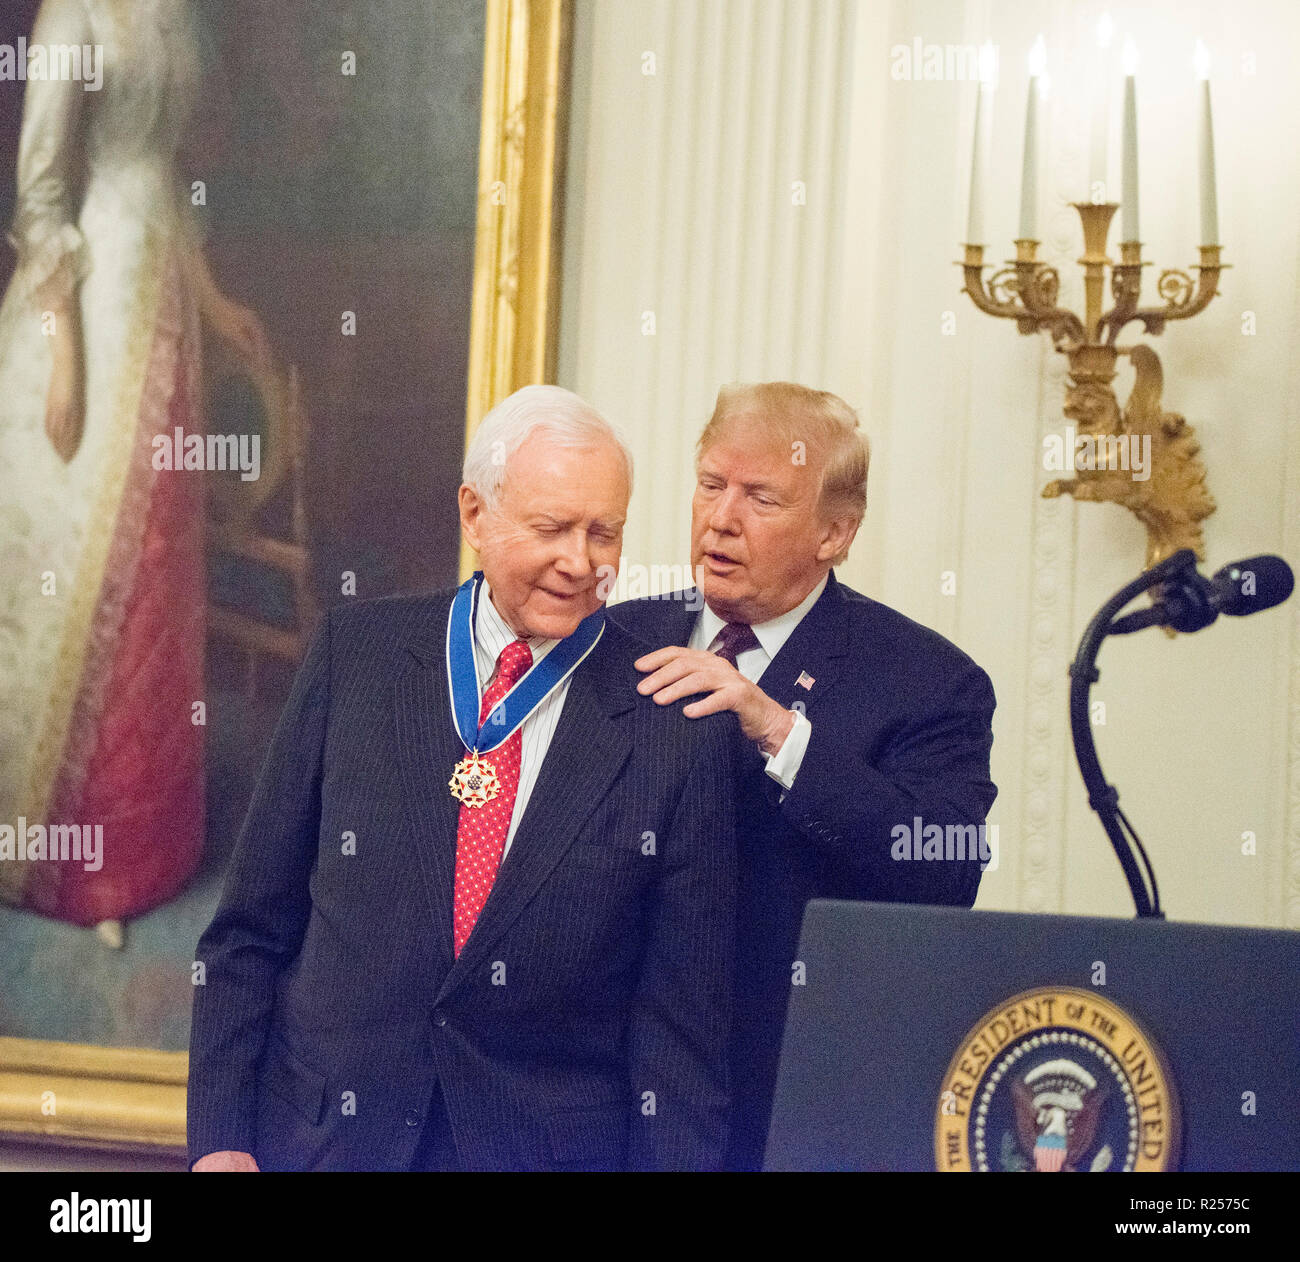 Washington, DC, 16. November 2018: Präsident Donald J Trumpf präsentiert die Medal of Freedom, der höchsten zivilen Auszeichnung durch das Weiße Haus in einem Festakt im East Room des Weißen Hauses zu Sen Orrin Hatch. Patsy Lynch/Alamy Stockfoto